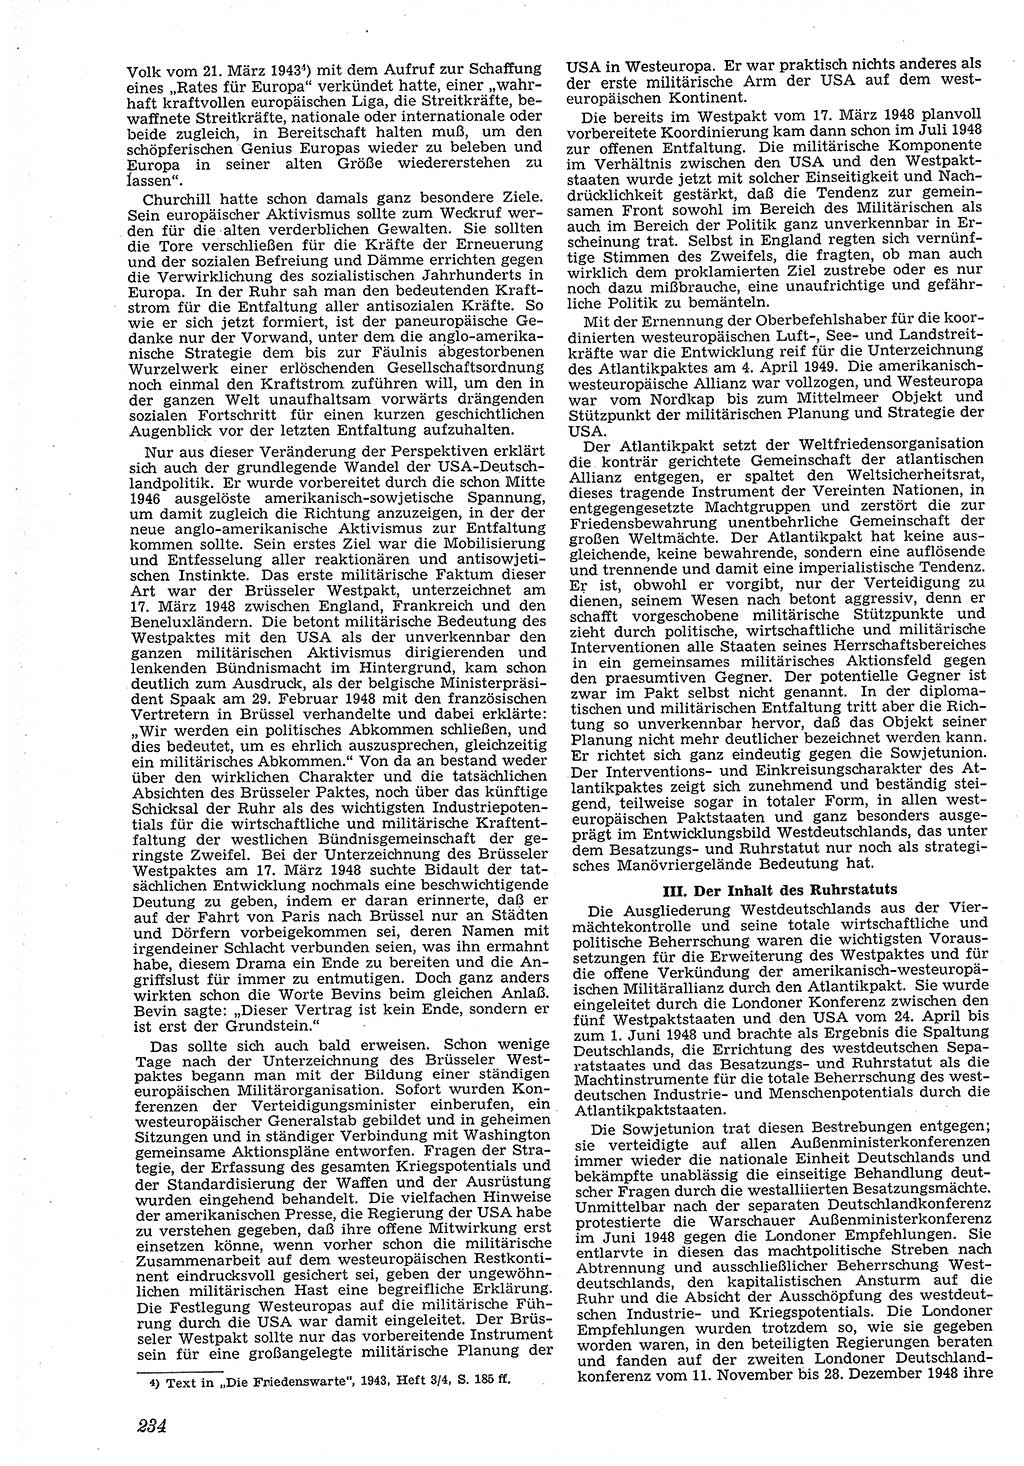 Neue Justiz (NJ), Zeitschrift für Recht und Rechtswissenschaft [Deutsche Demokratische Republik (DDR)], 4. Jahrgang 1950, Seite 234 (NJ DDR 1950, S. 234)